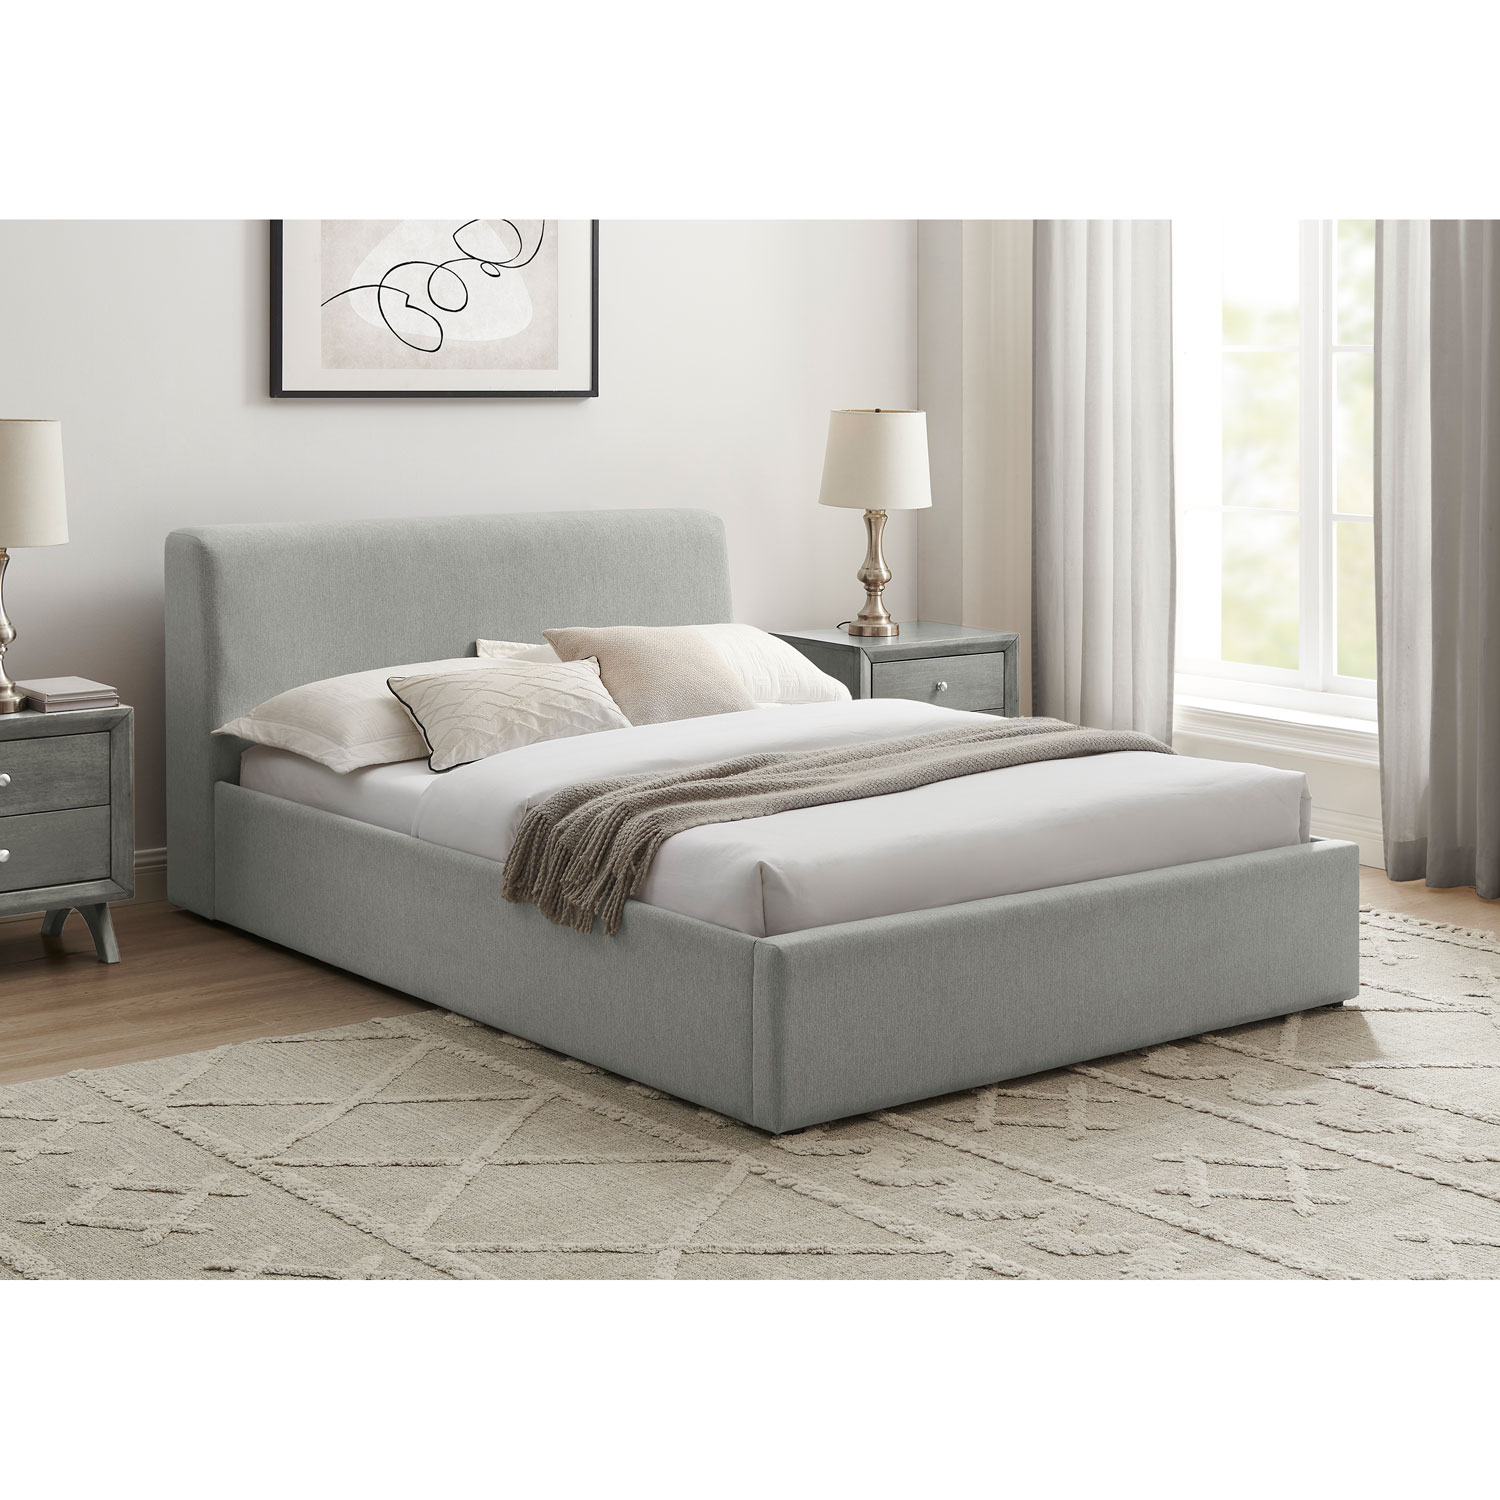 Deville Modern Platform Bed - Double - Light Grey